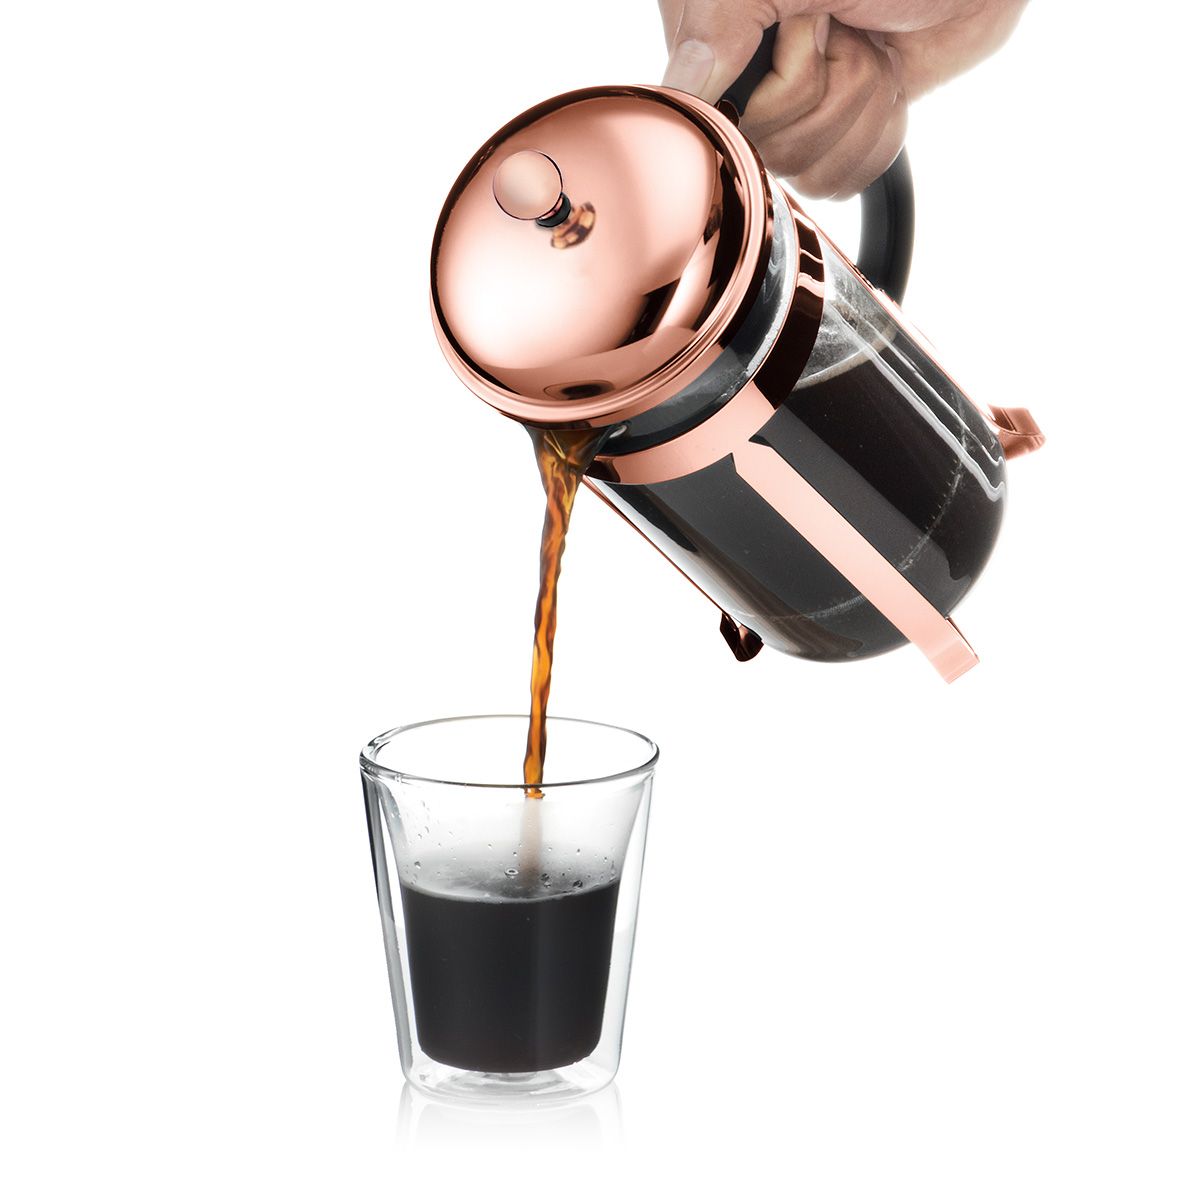 BODUM Chambord kaffebryggning rostfritt stål b: 0,17 cm 1 l, 8 kopp